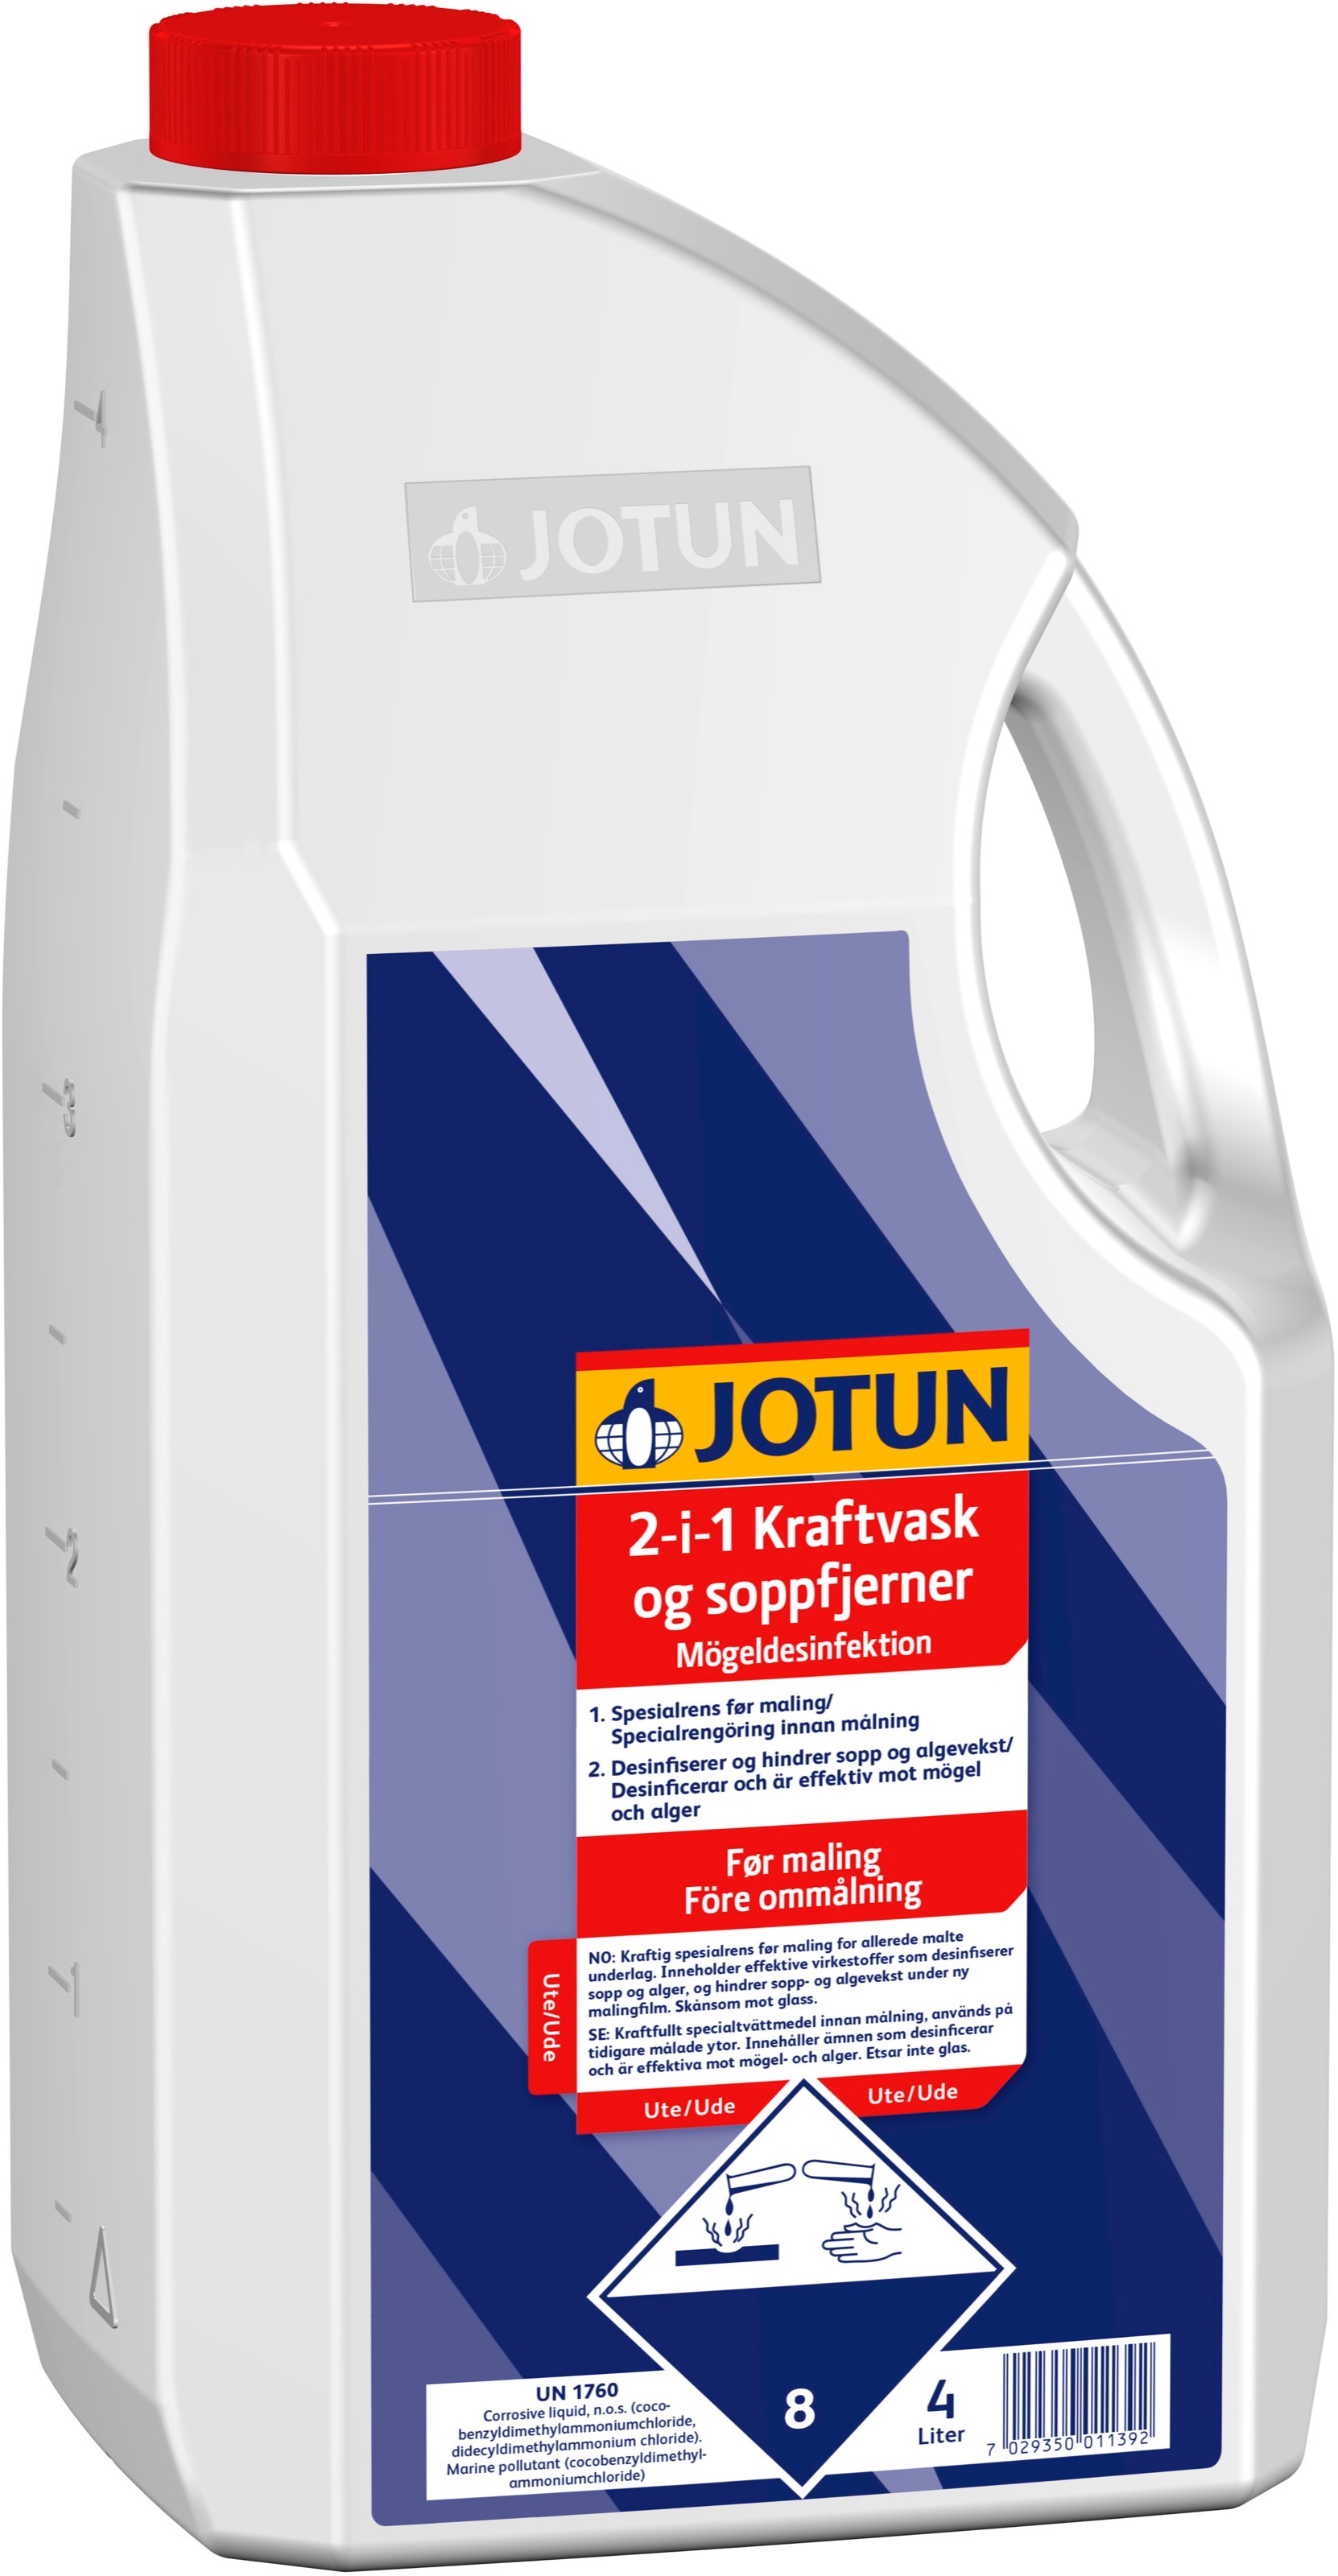 Jotun 2-i-1 Kraftvask og soppfjerner